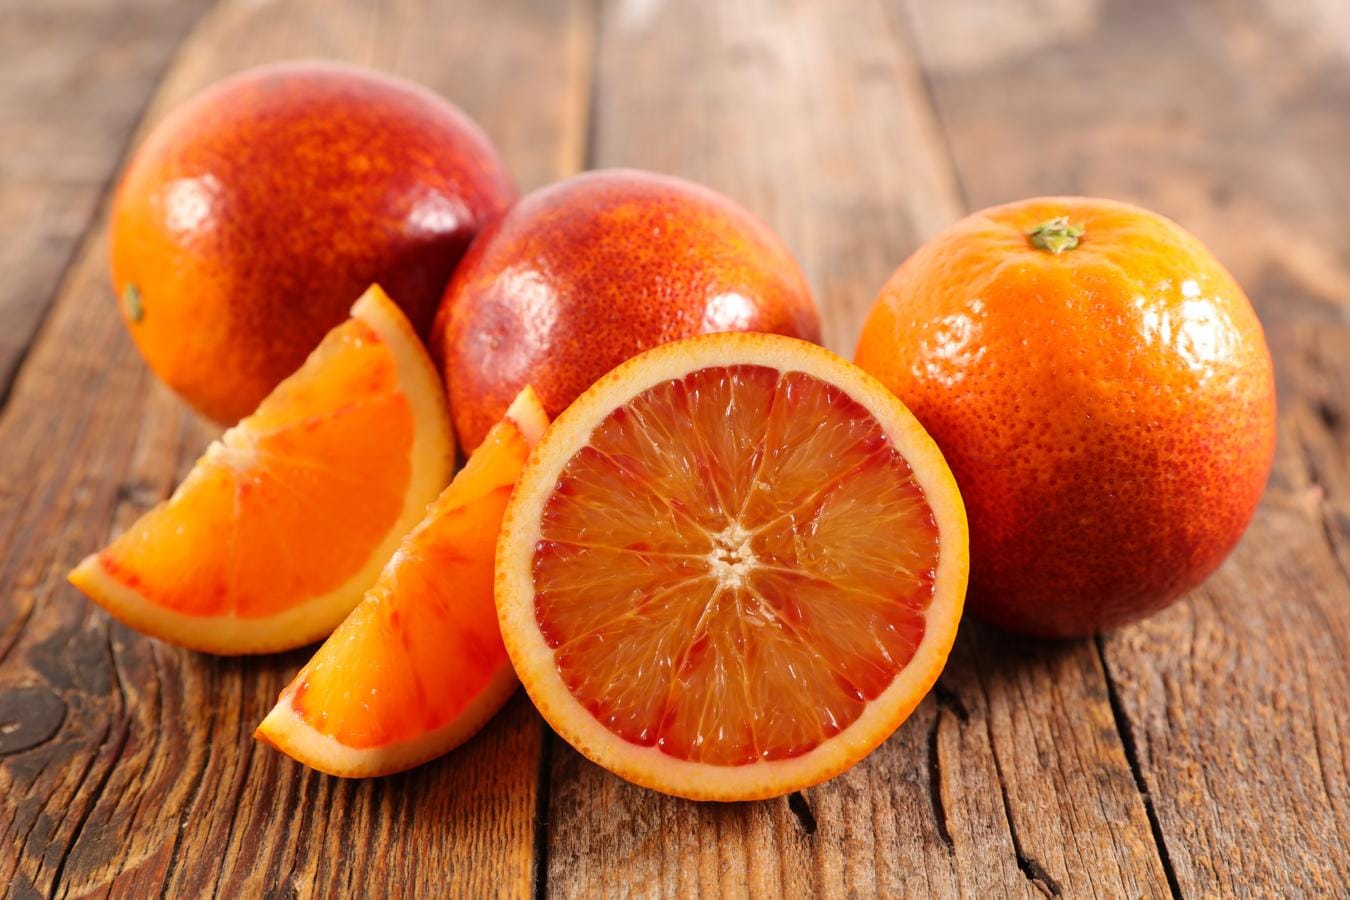 Naranja. La mayor parte de la naranja es agua, y esta fruta, además de ser rica en vitamina C y potasio, es también una buena fuente de ácido fólico, siendo este de 37 ug por 100 gramos de naranja. Podemos encontrar naranjas todo el año, pero su temporada va de septiembre a marzo.